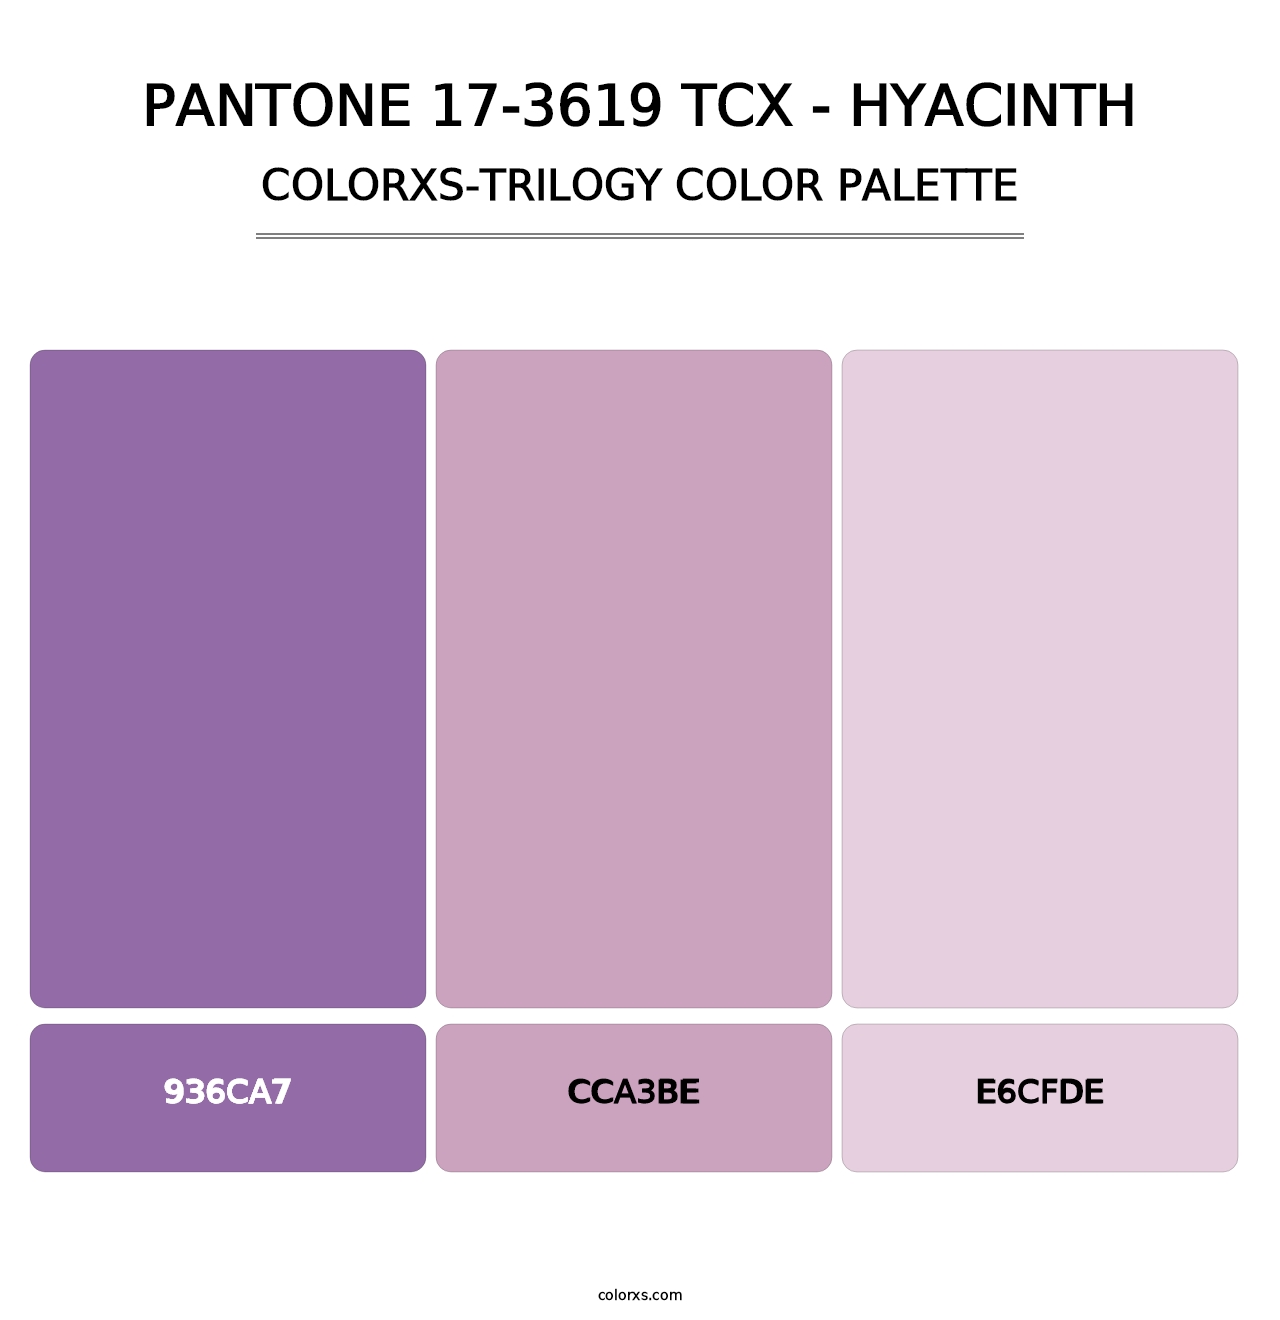 PANTONE 17-3619 TCX - Hyacinth - Colorxs Trilogy Palette